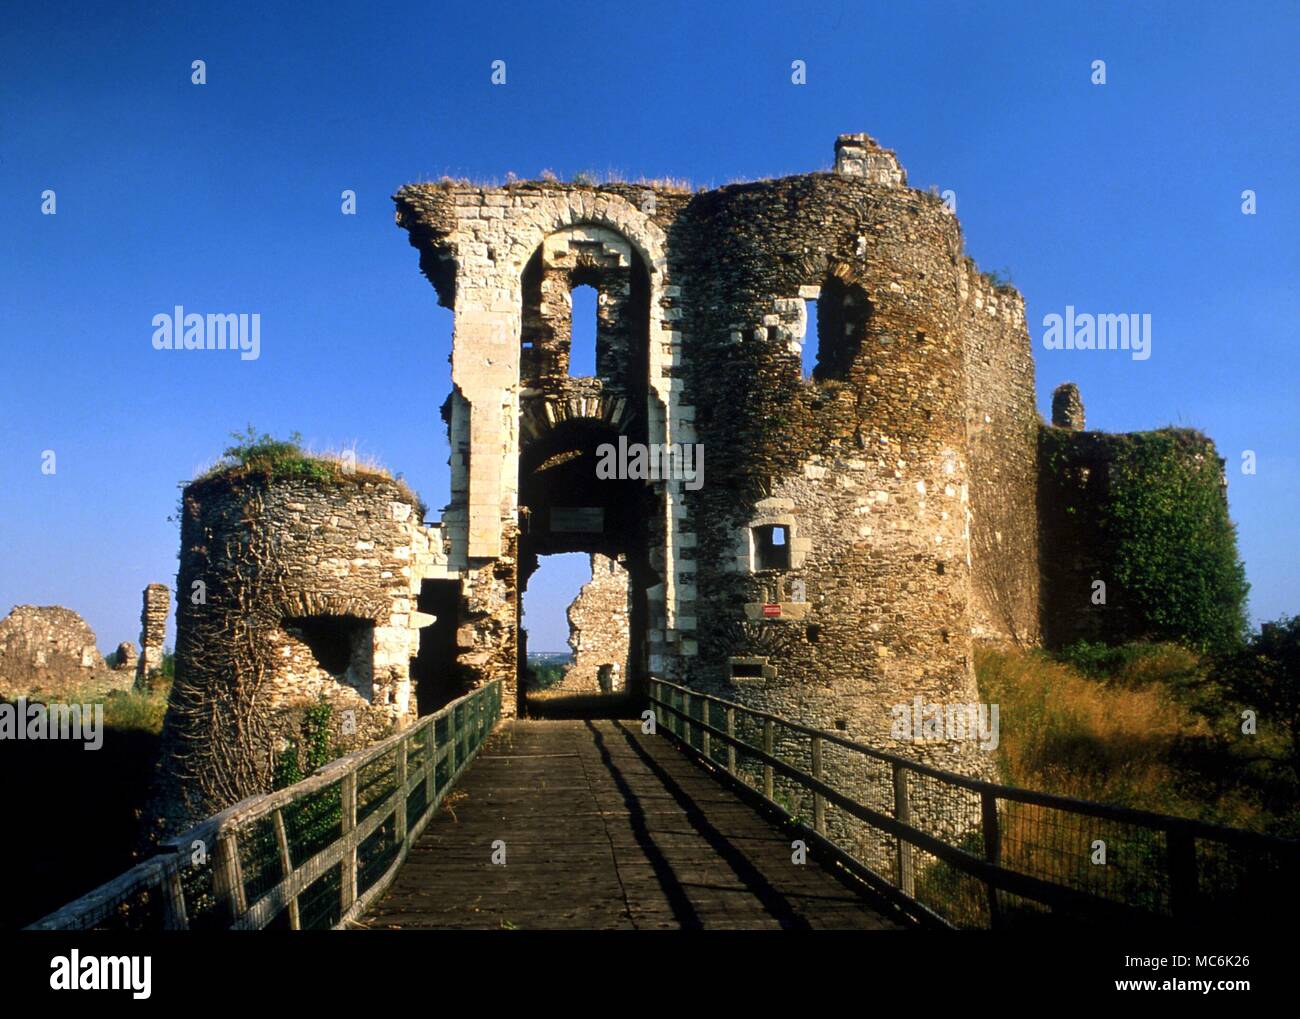 Siti di stregoneria - Il castello di Champtoce-sur-Loire, uno dei castelli di Barbablù che apparteneva a Gilles de Rais, giustiziato come eretico e strega in 1440 Foto Stock